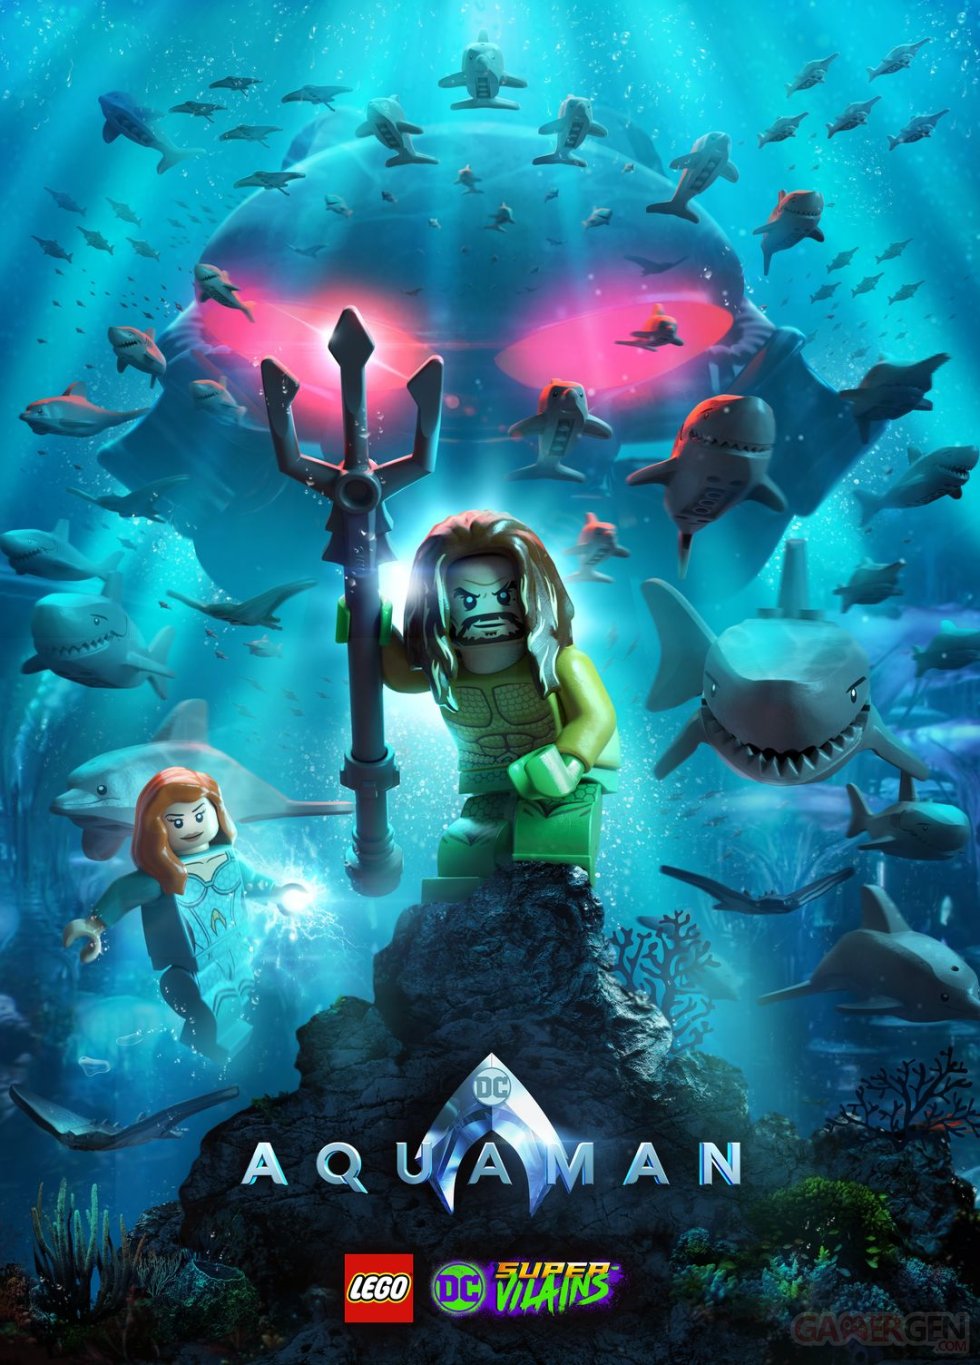 LEGO-DC-Super-Vilains-Aquaman-01-29-11-2018